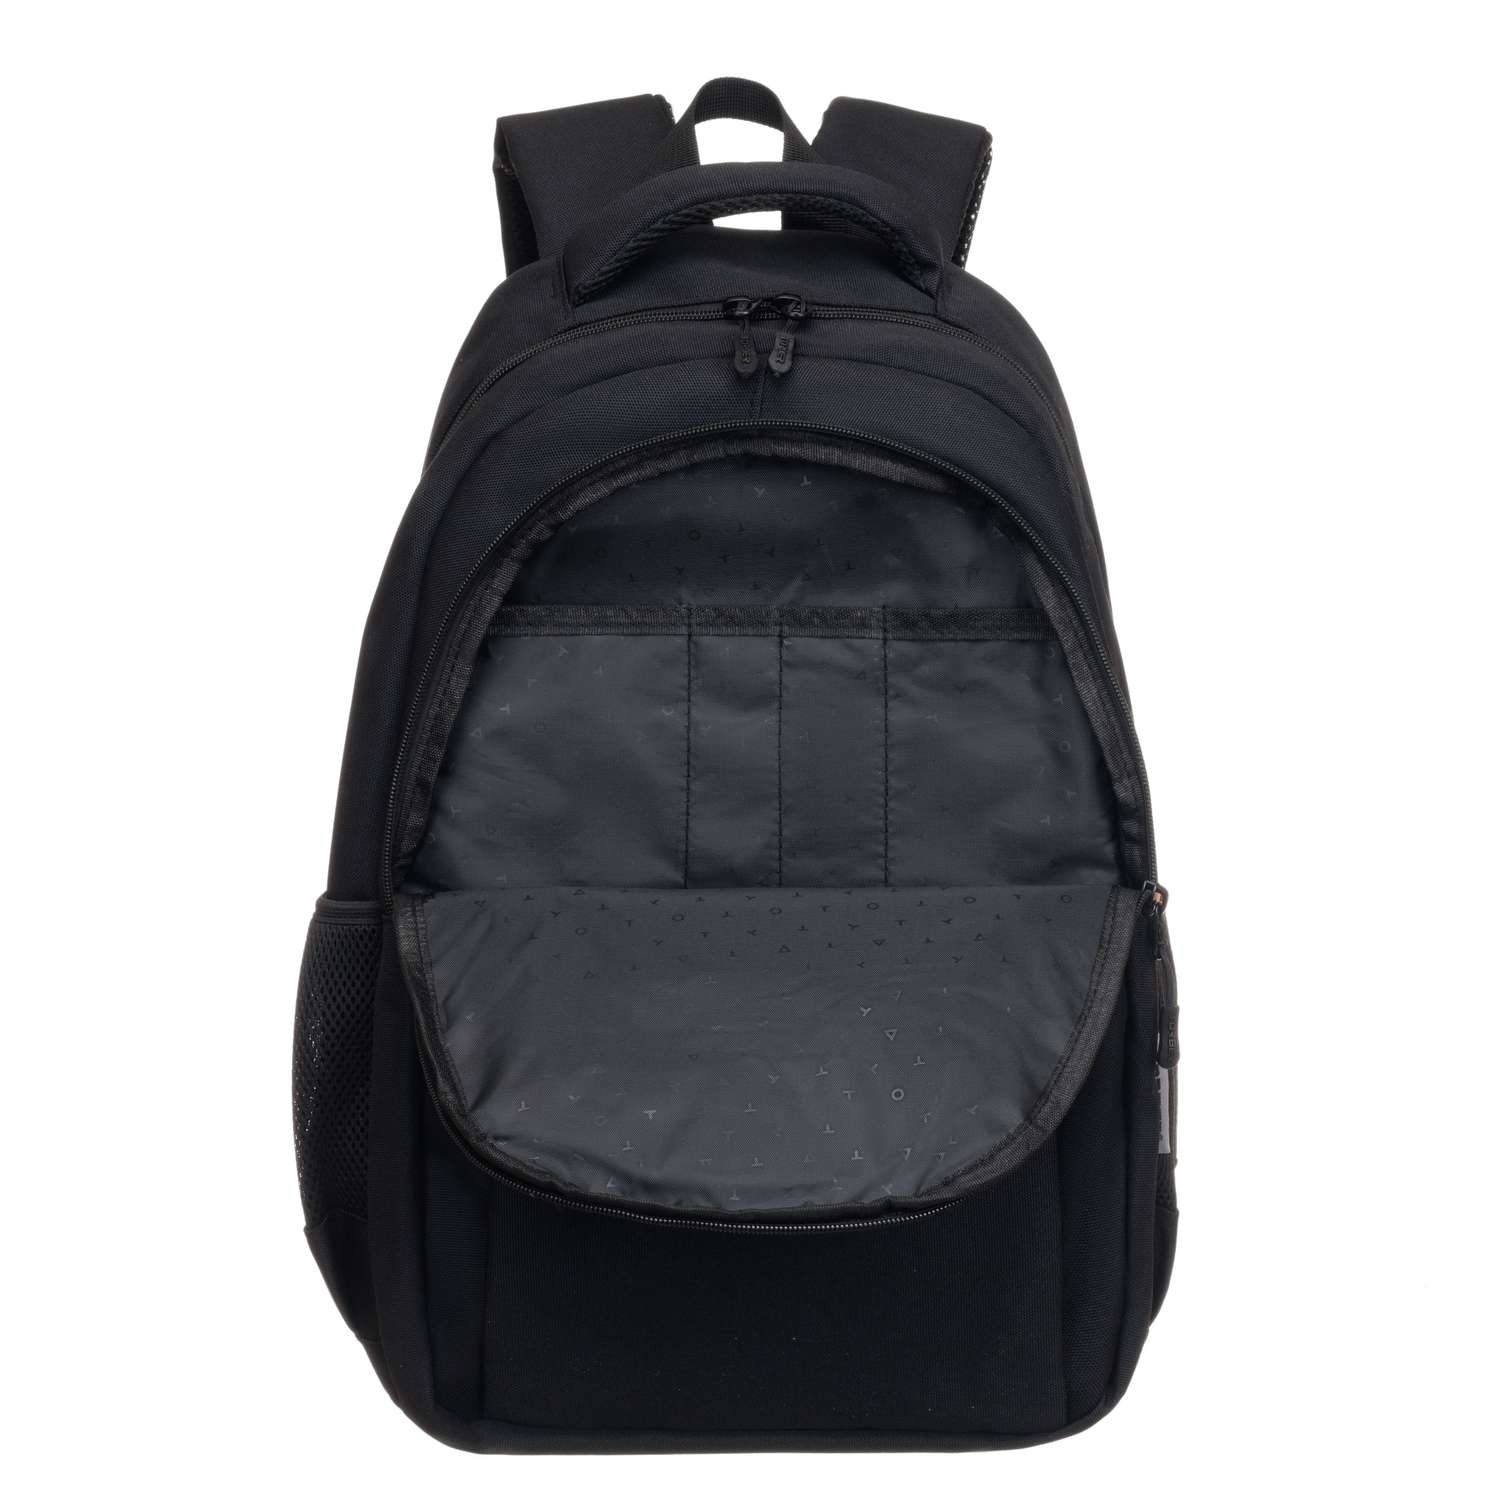 Рюкзак TORBER CLASS X черный и мешок для сменной обуви - фото 7